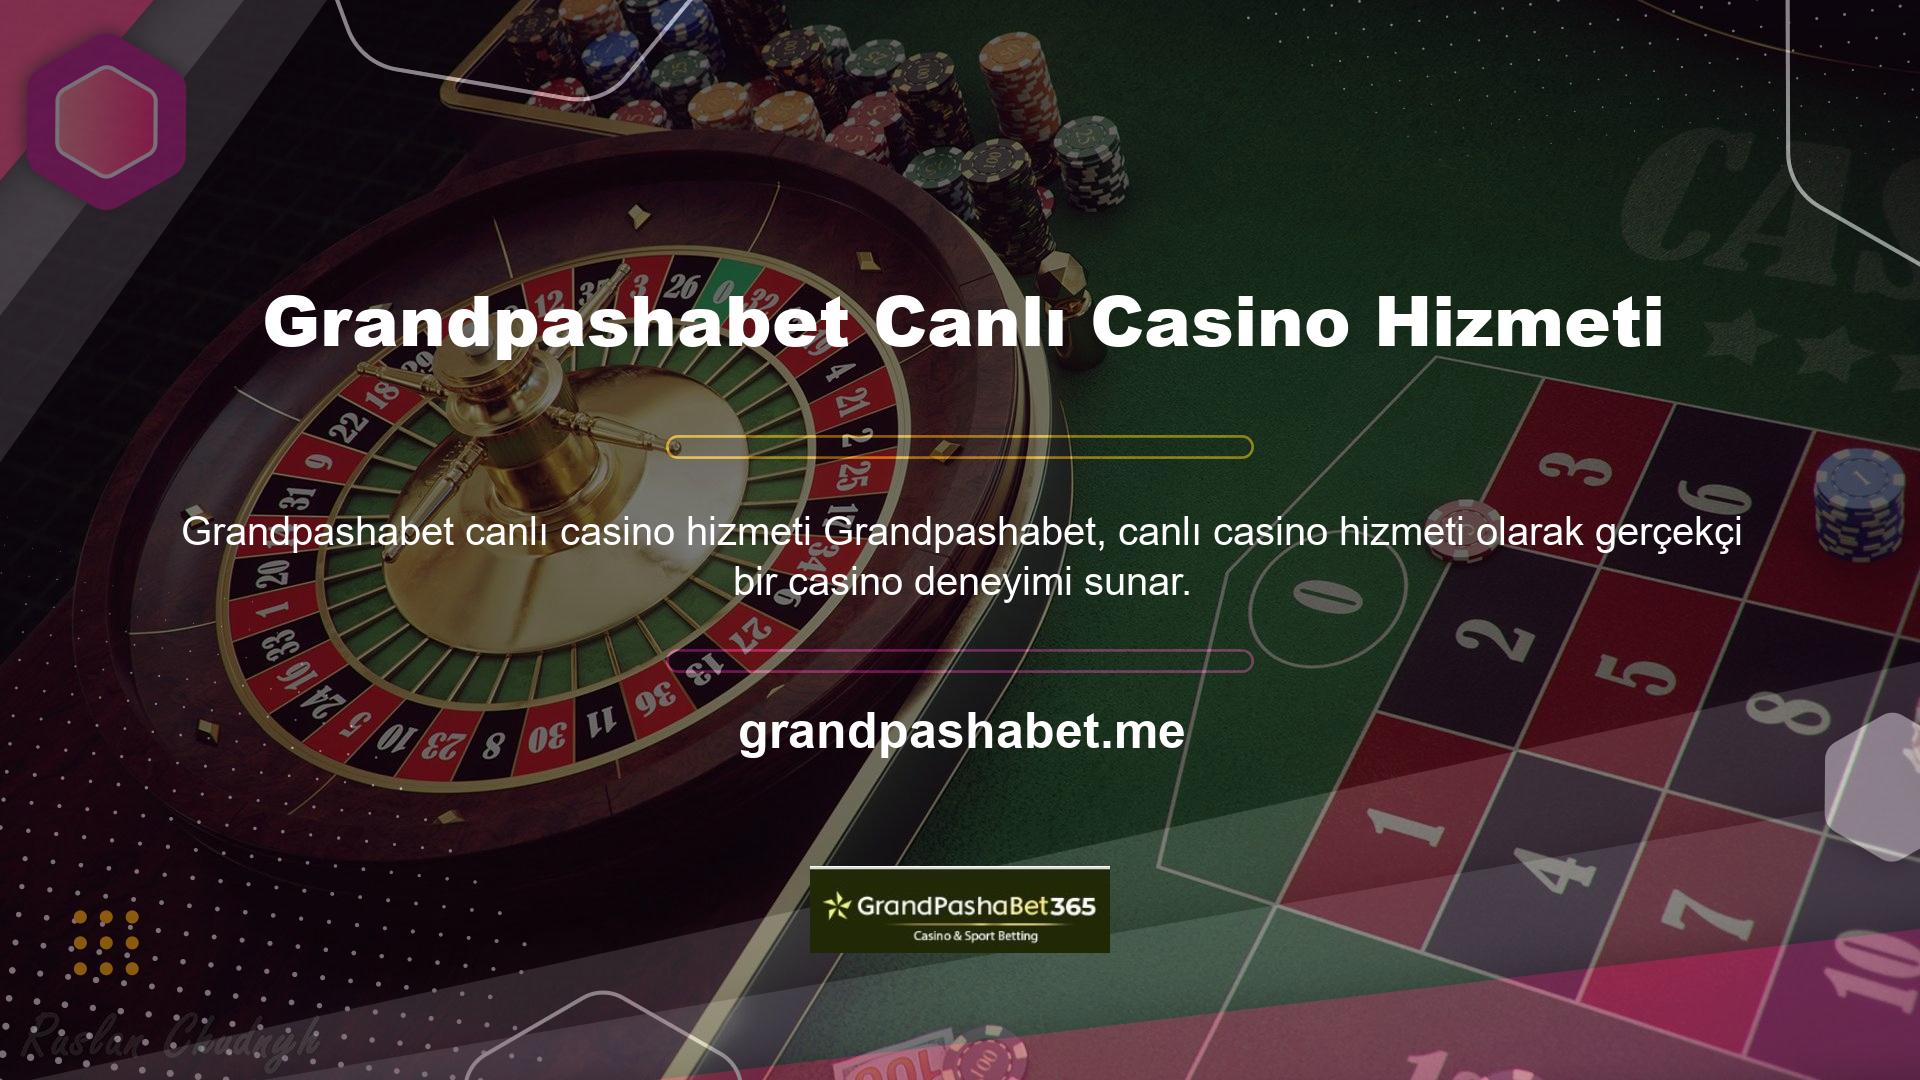 Siteye giriş yaptıktan sonra canlı casino bölümünde eğlenceli ve havalı krupiyeler ile canlı casino oyunları oynayabilirsiniz